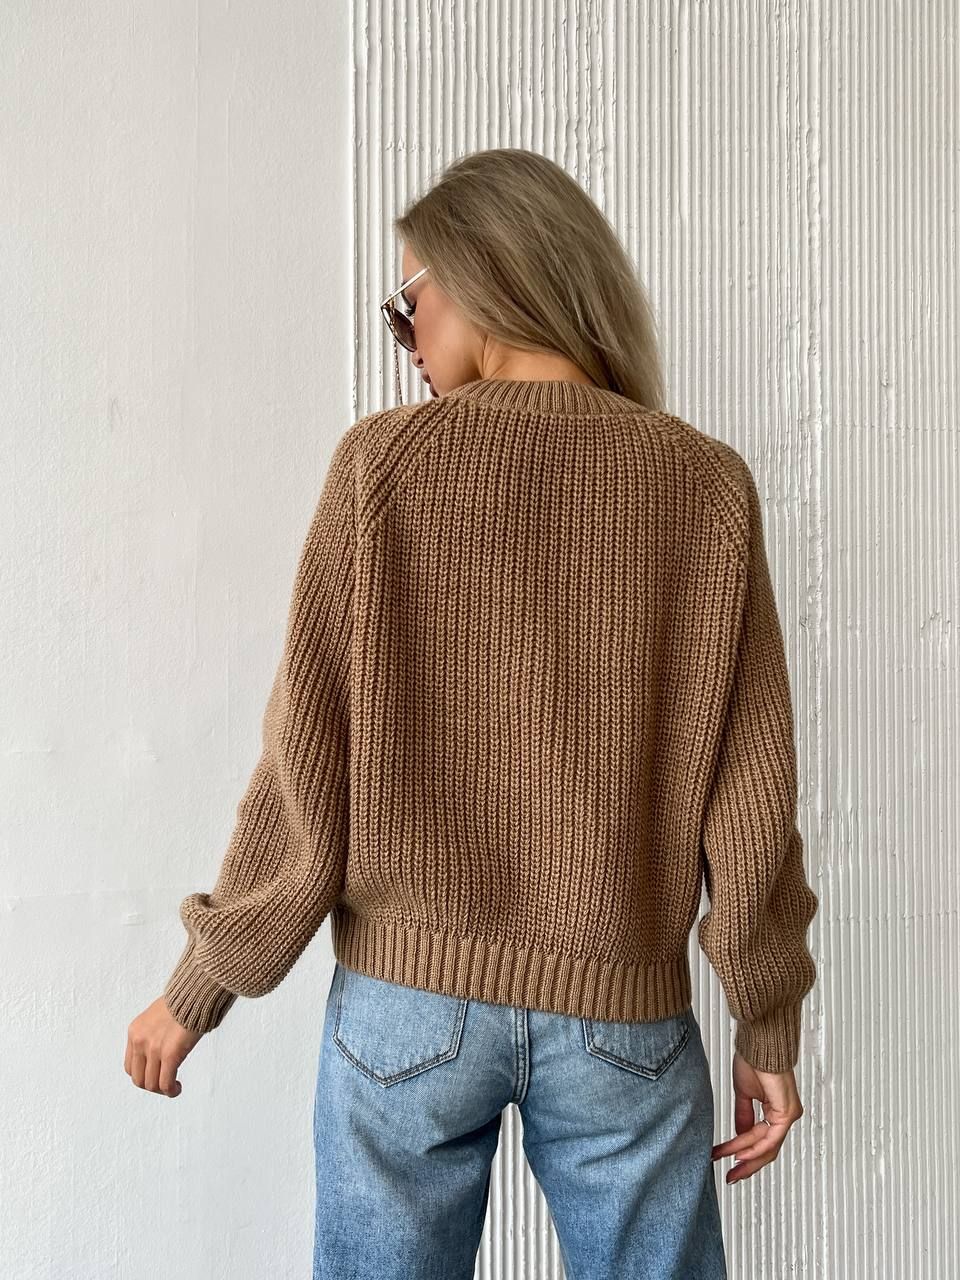 Базовый шерстяной свитер кемел, Кэмел, универсальный (S-L)